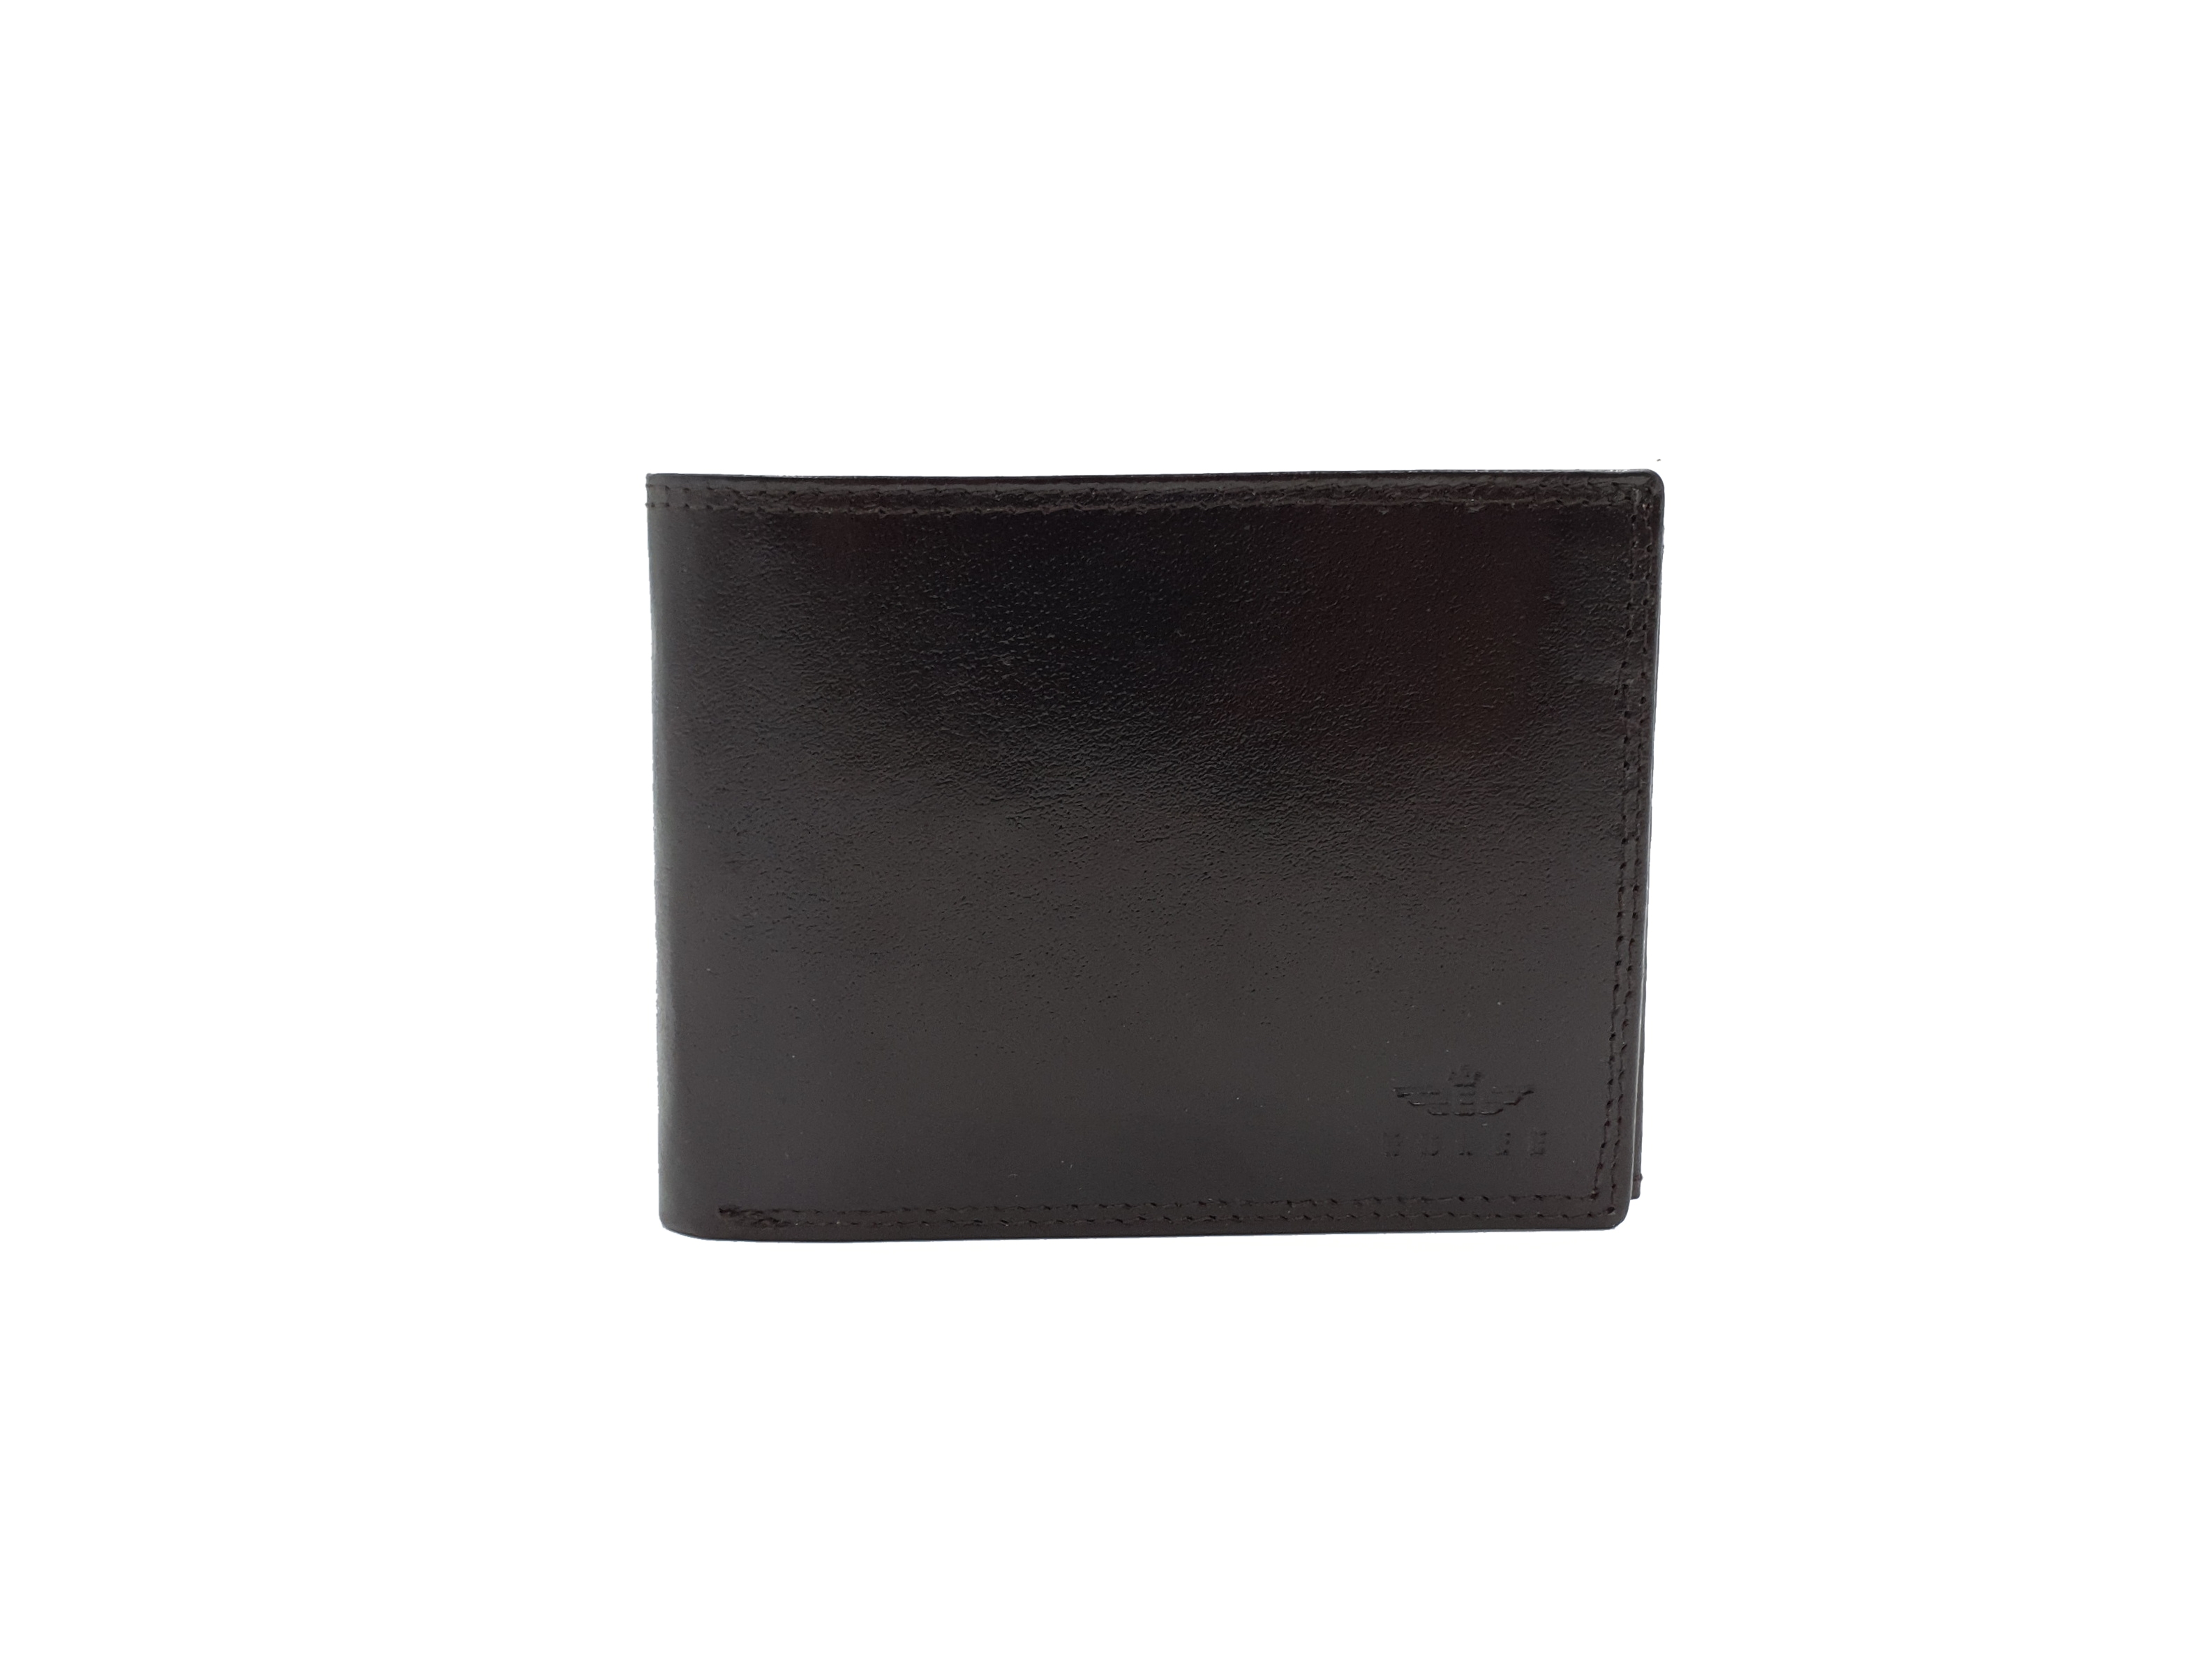 Pánská kožená peněženka ESLEE 6332 tmavě hnědá